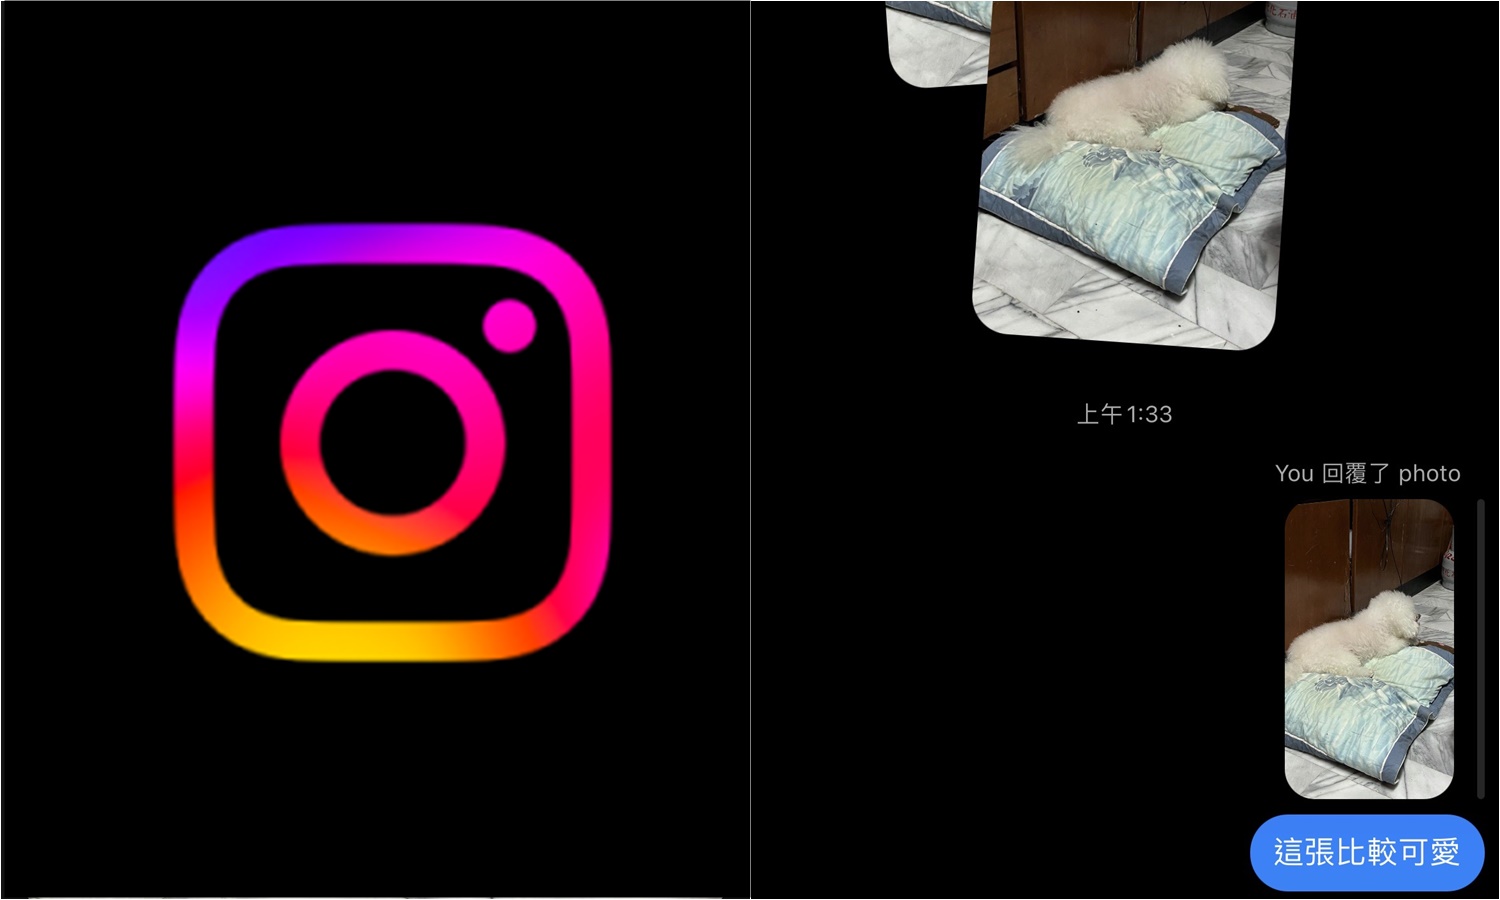 【科技新知】Instagram聊天室怎麼回覆單一張照片/圖片？IG新功能看過來！